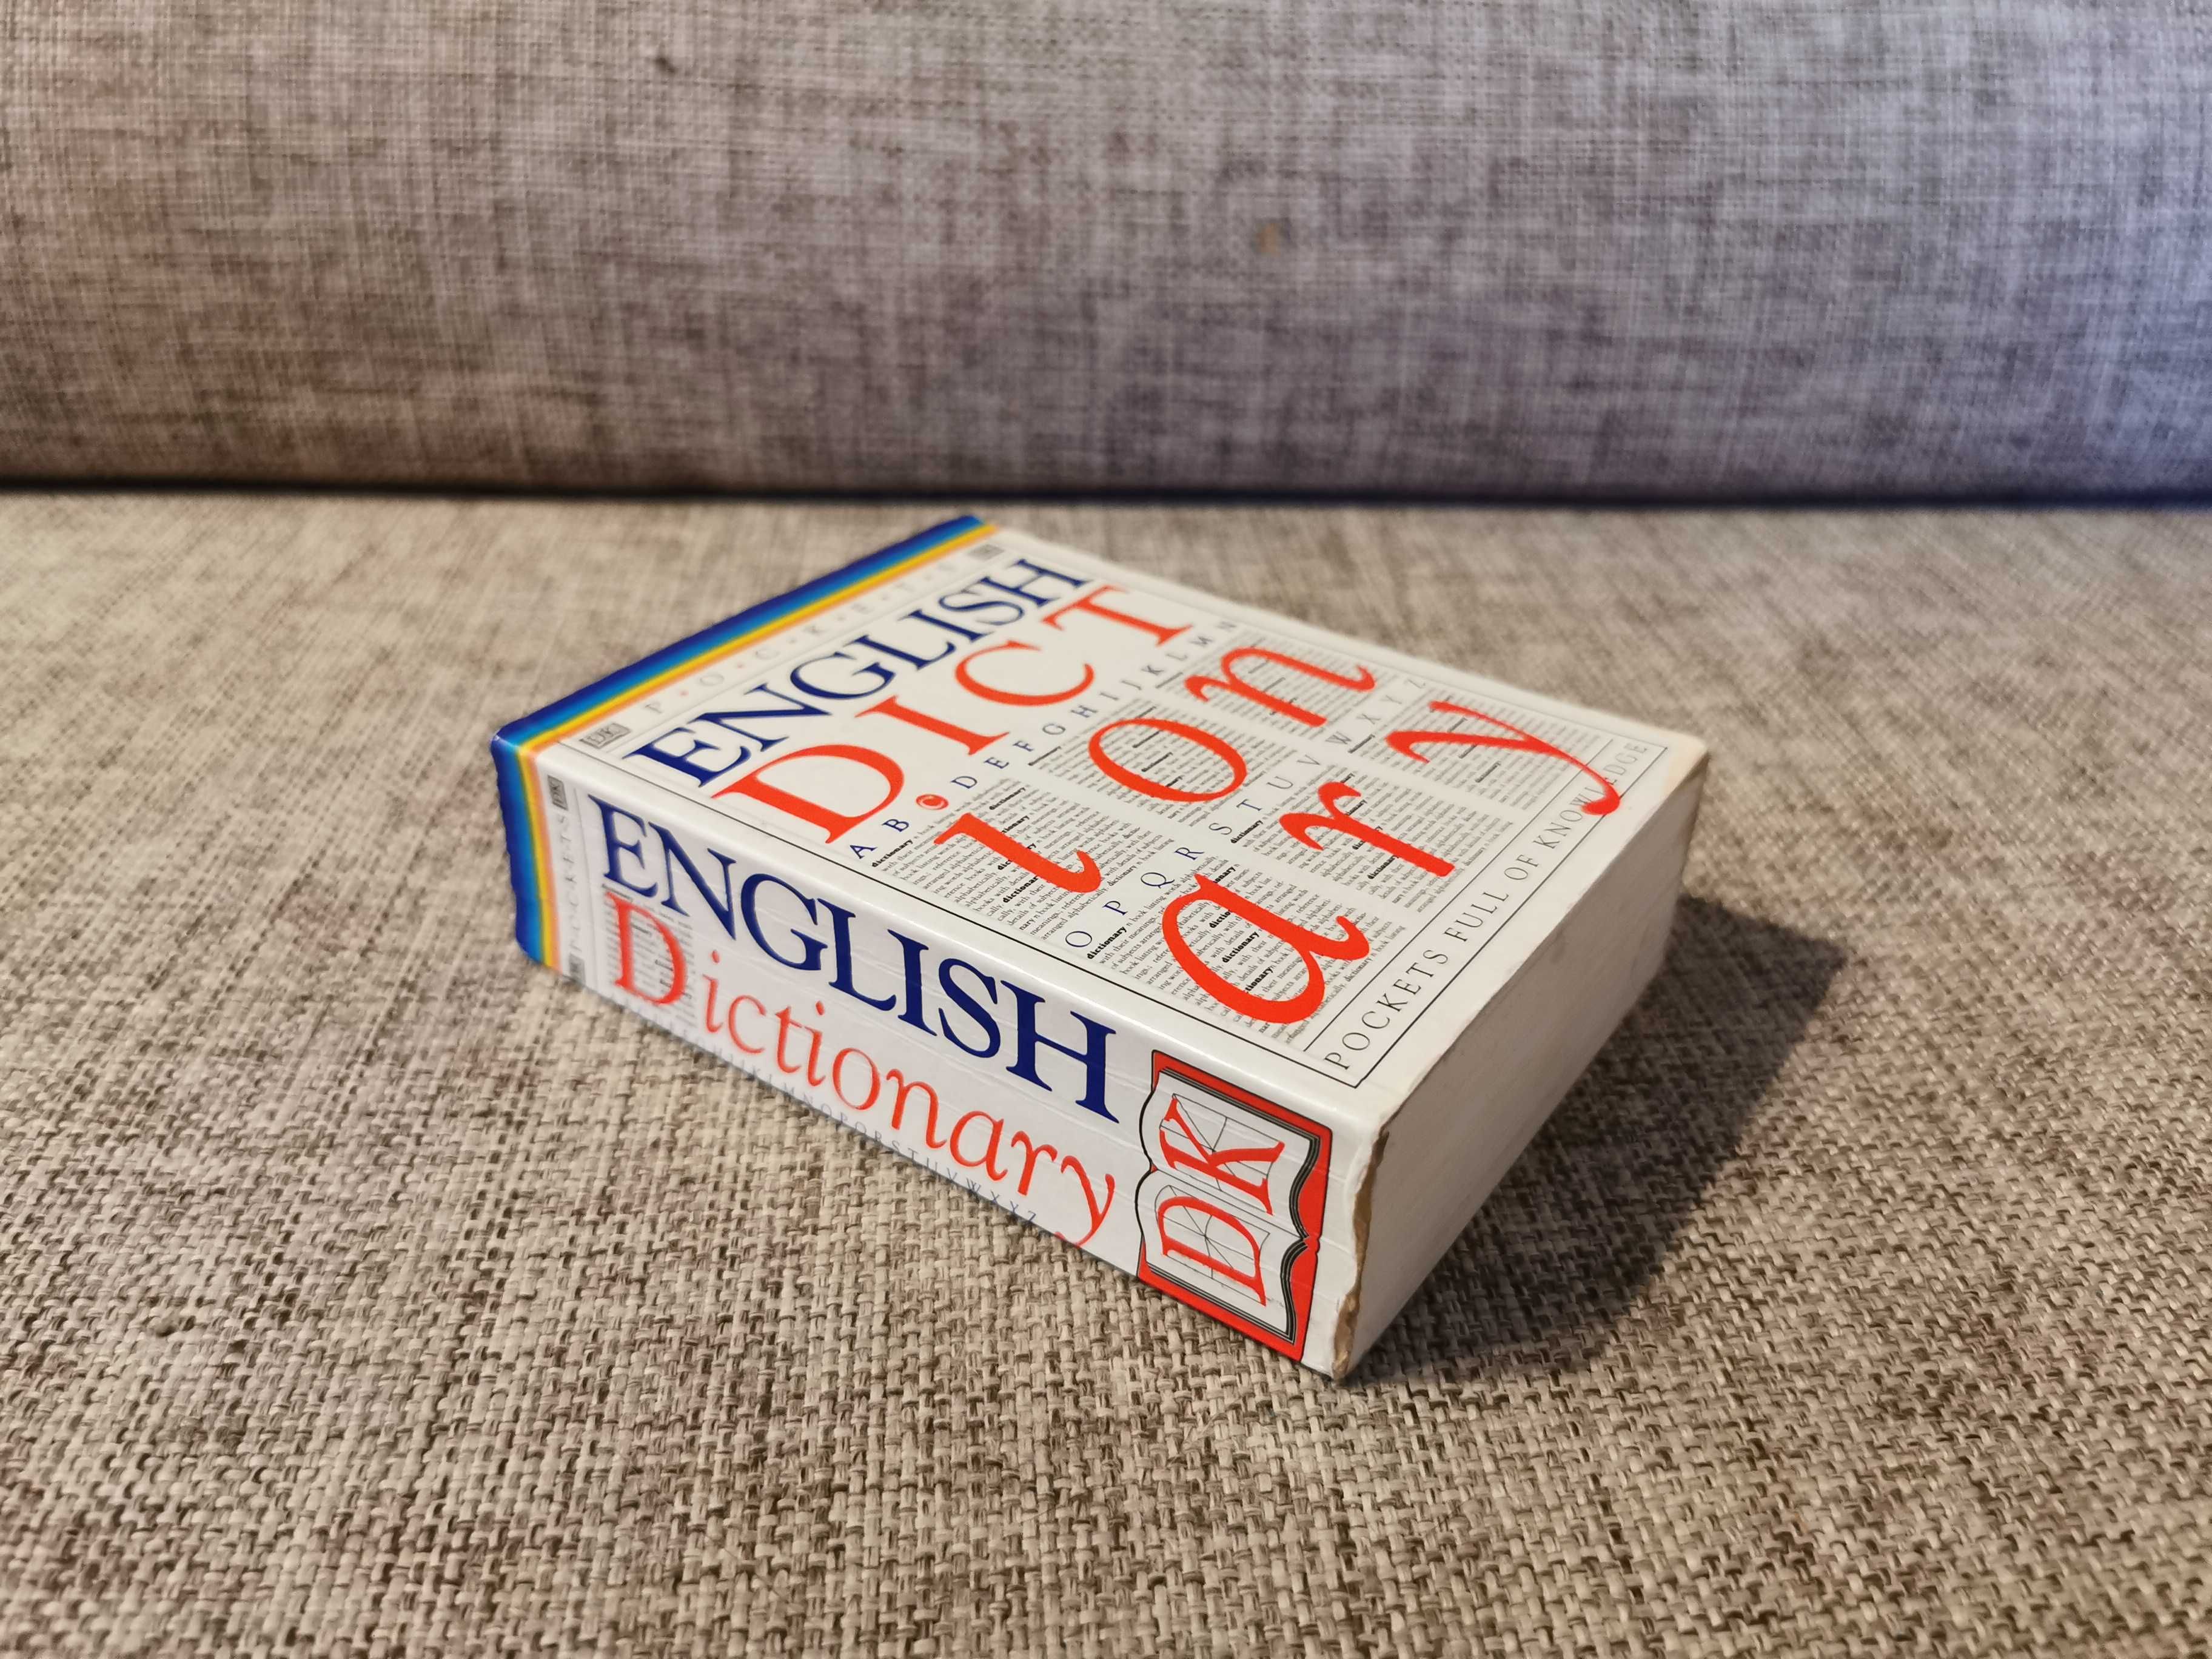 Słownik Angielskiego nauka - Pockets English Dictionary